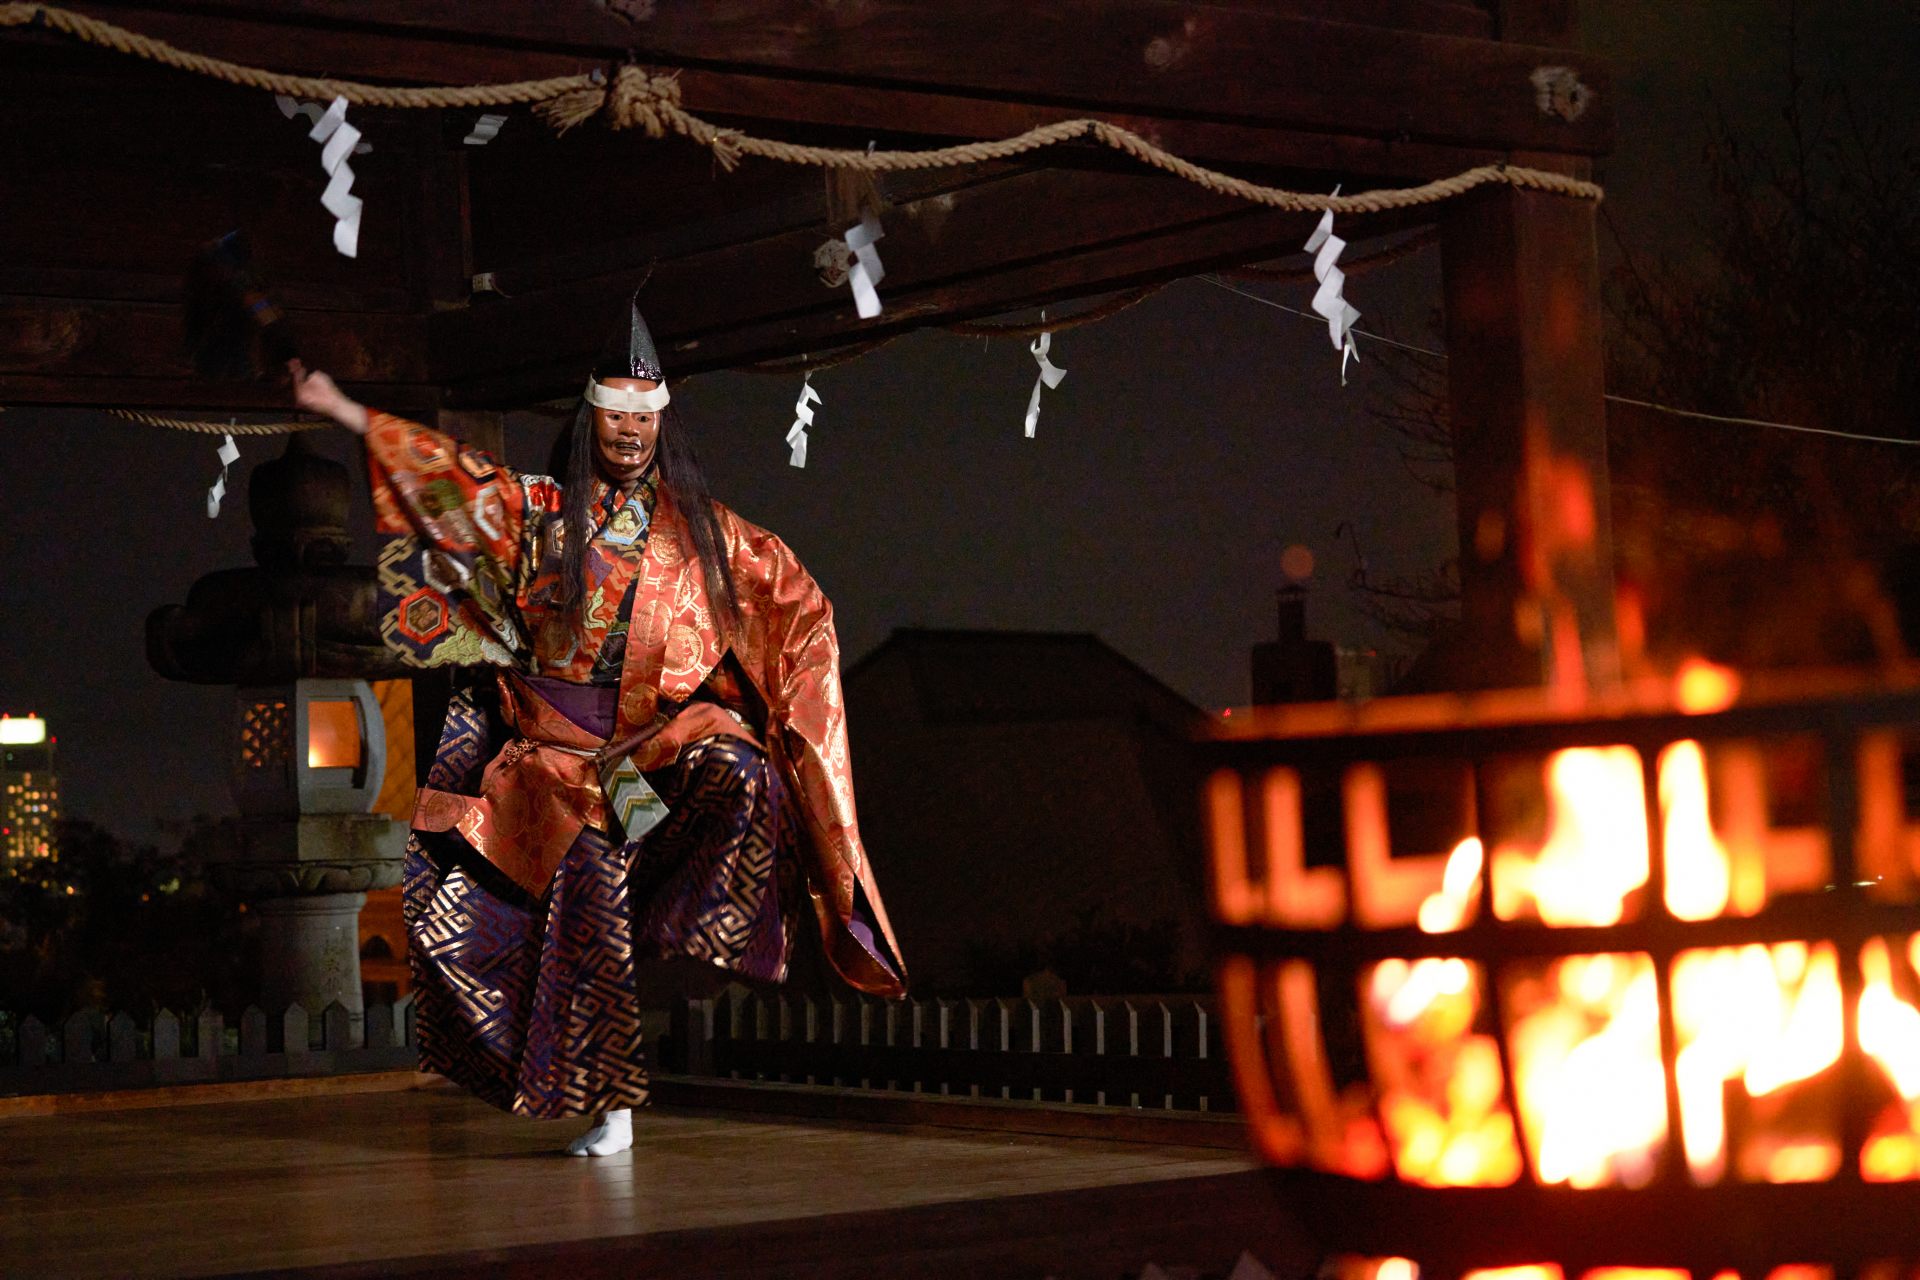 La danza del Noh tiembla, como si en ella habitara el espíritu del joven samurái del personaje principal.